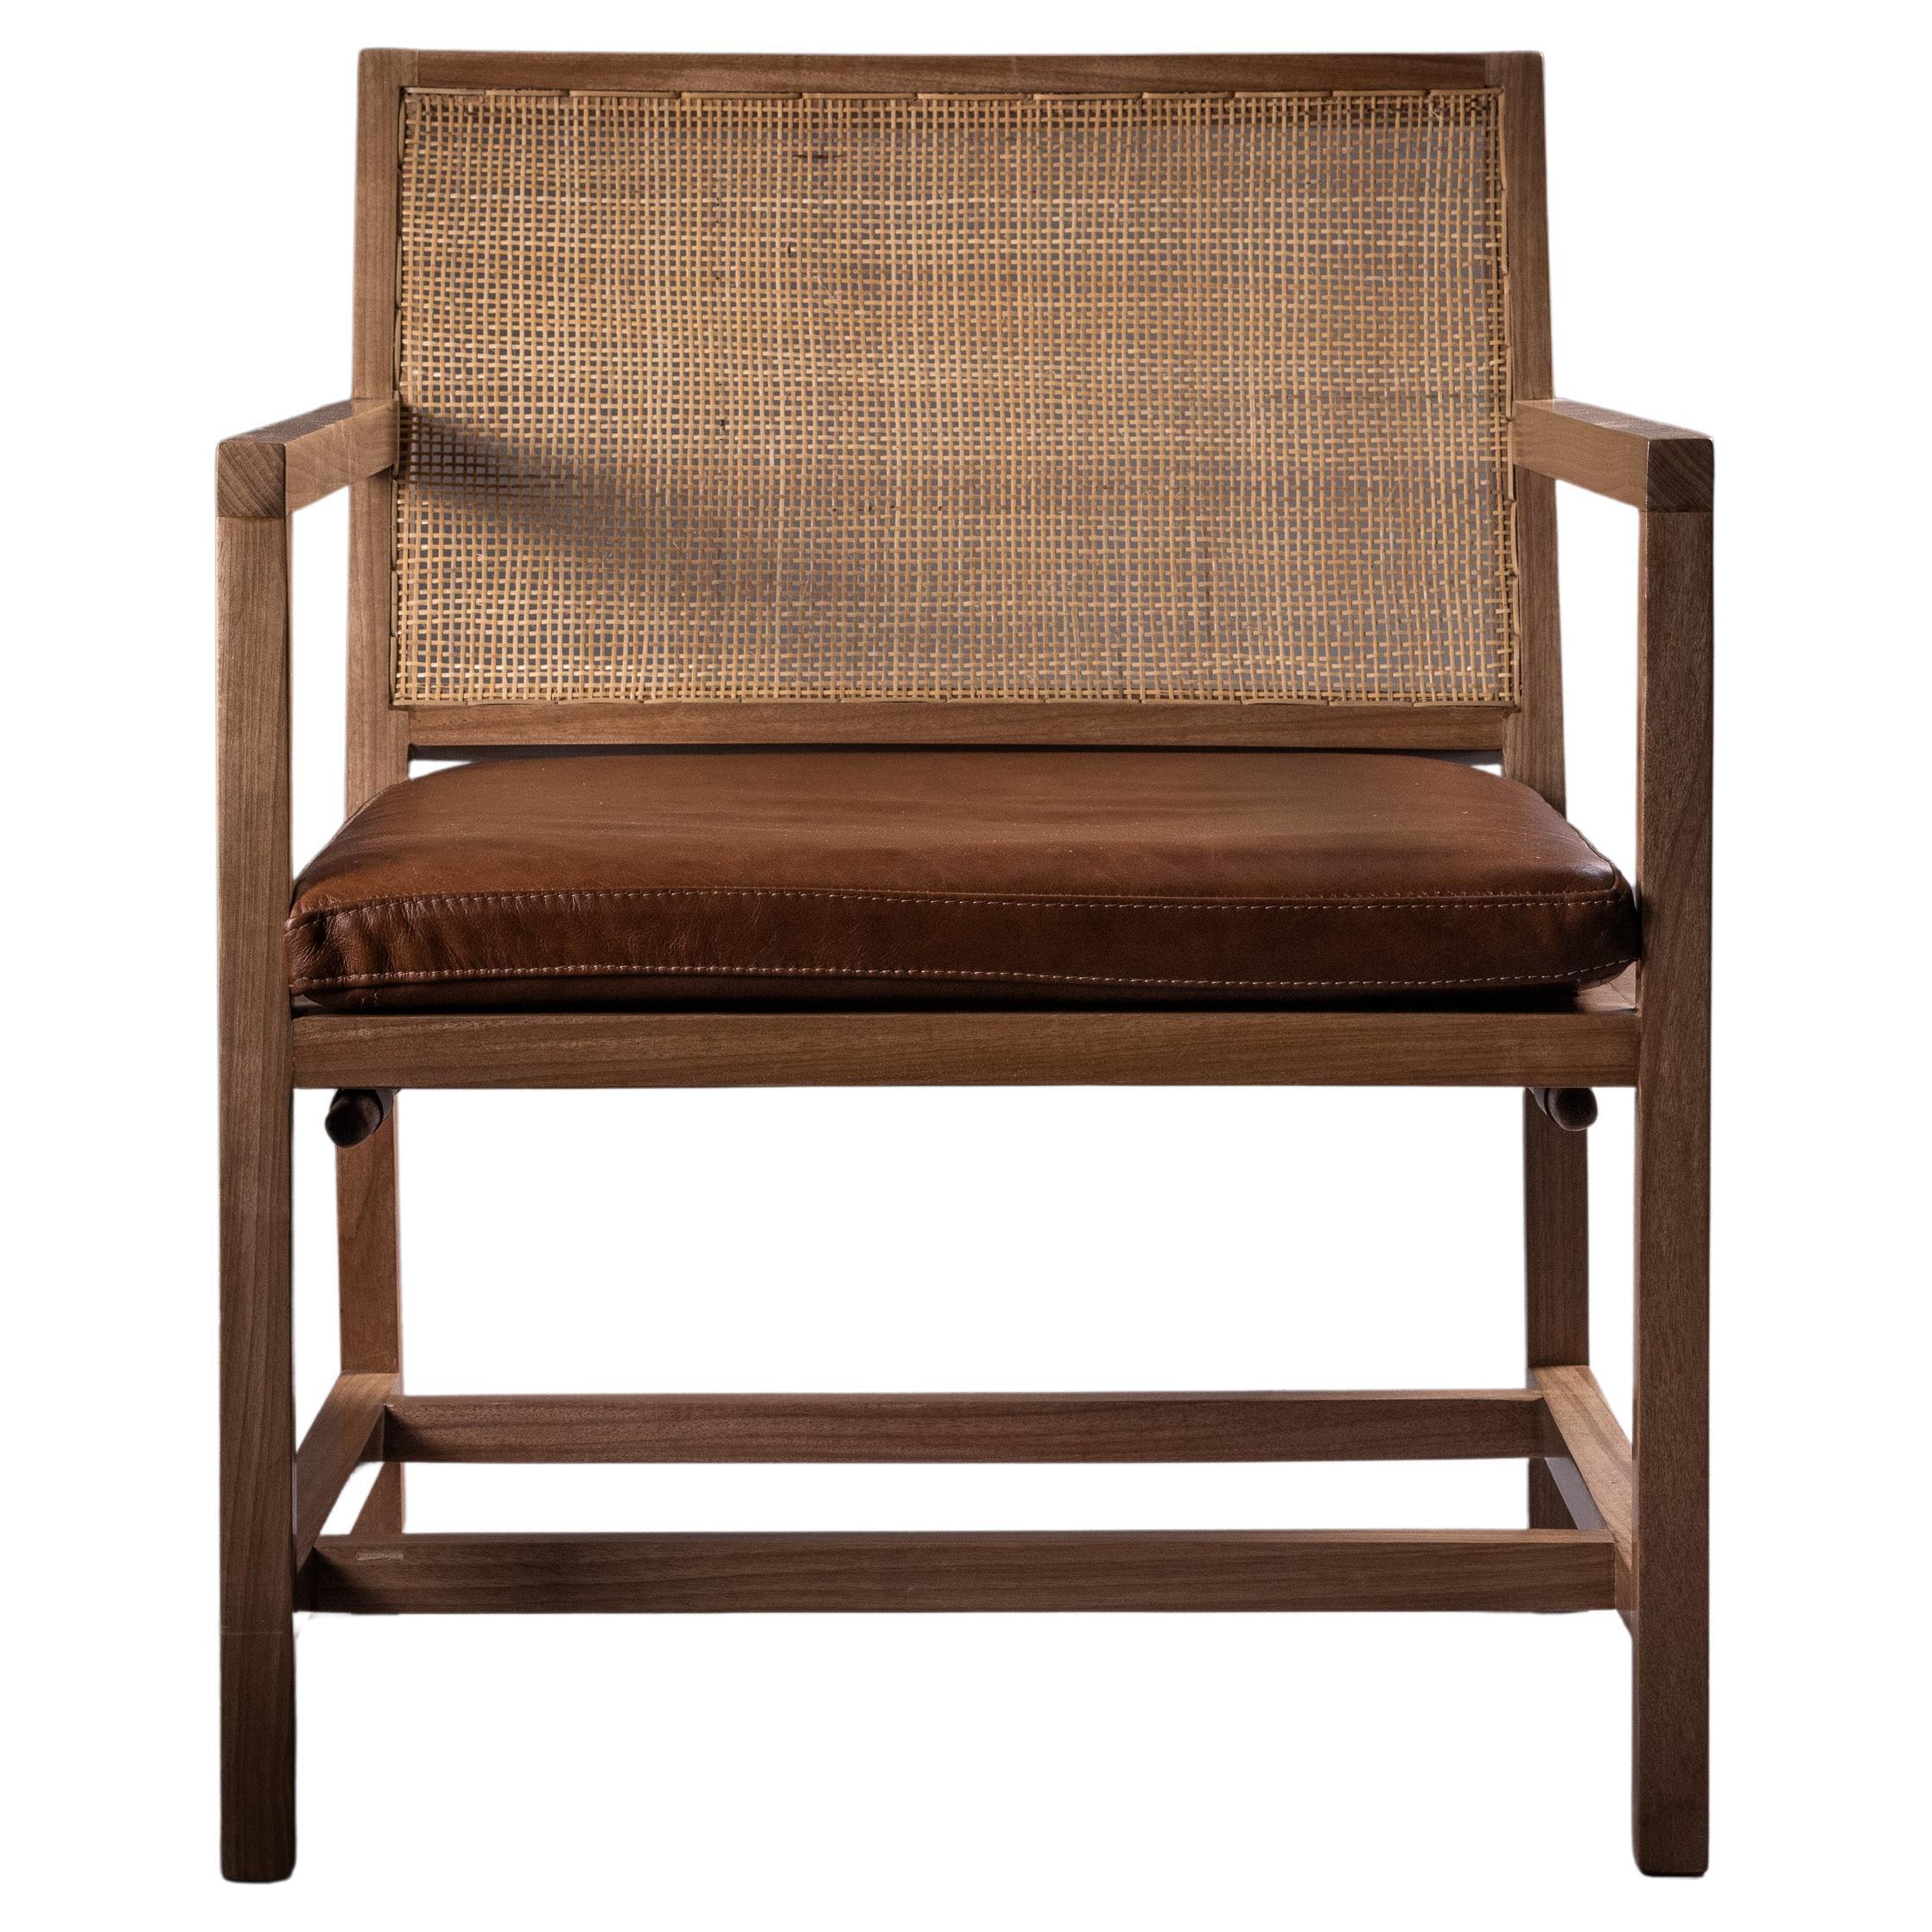 Le fauteuil n° 2 rend hommage au mobilier moderne brésilien des années 1950 et 1960. Sa structure robuste et confortable allie de manière unique la détente et la sophistication. Fabriqué avec soin à partir des bois nobles Jequitibá et Sucupira, il